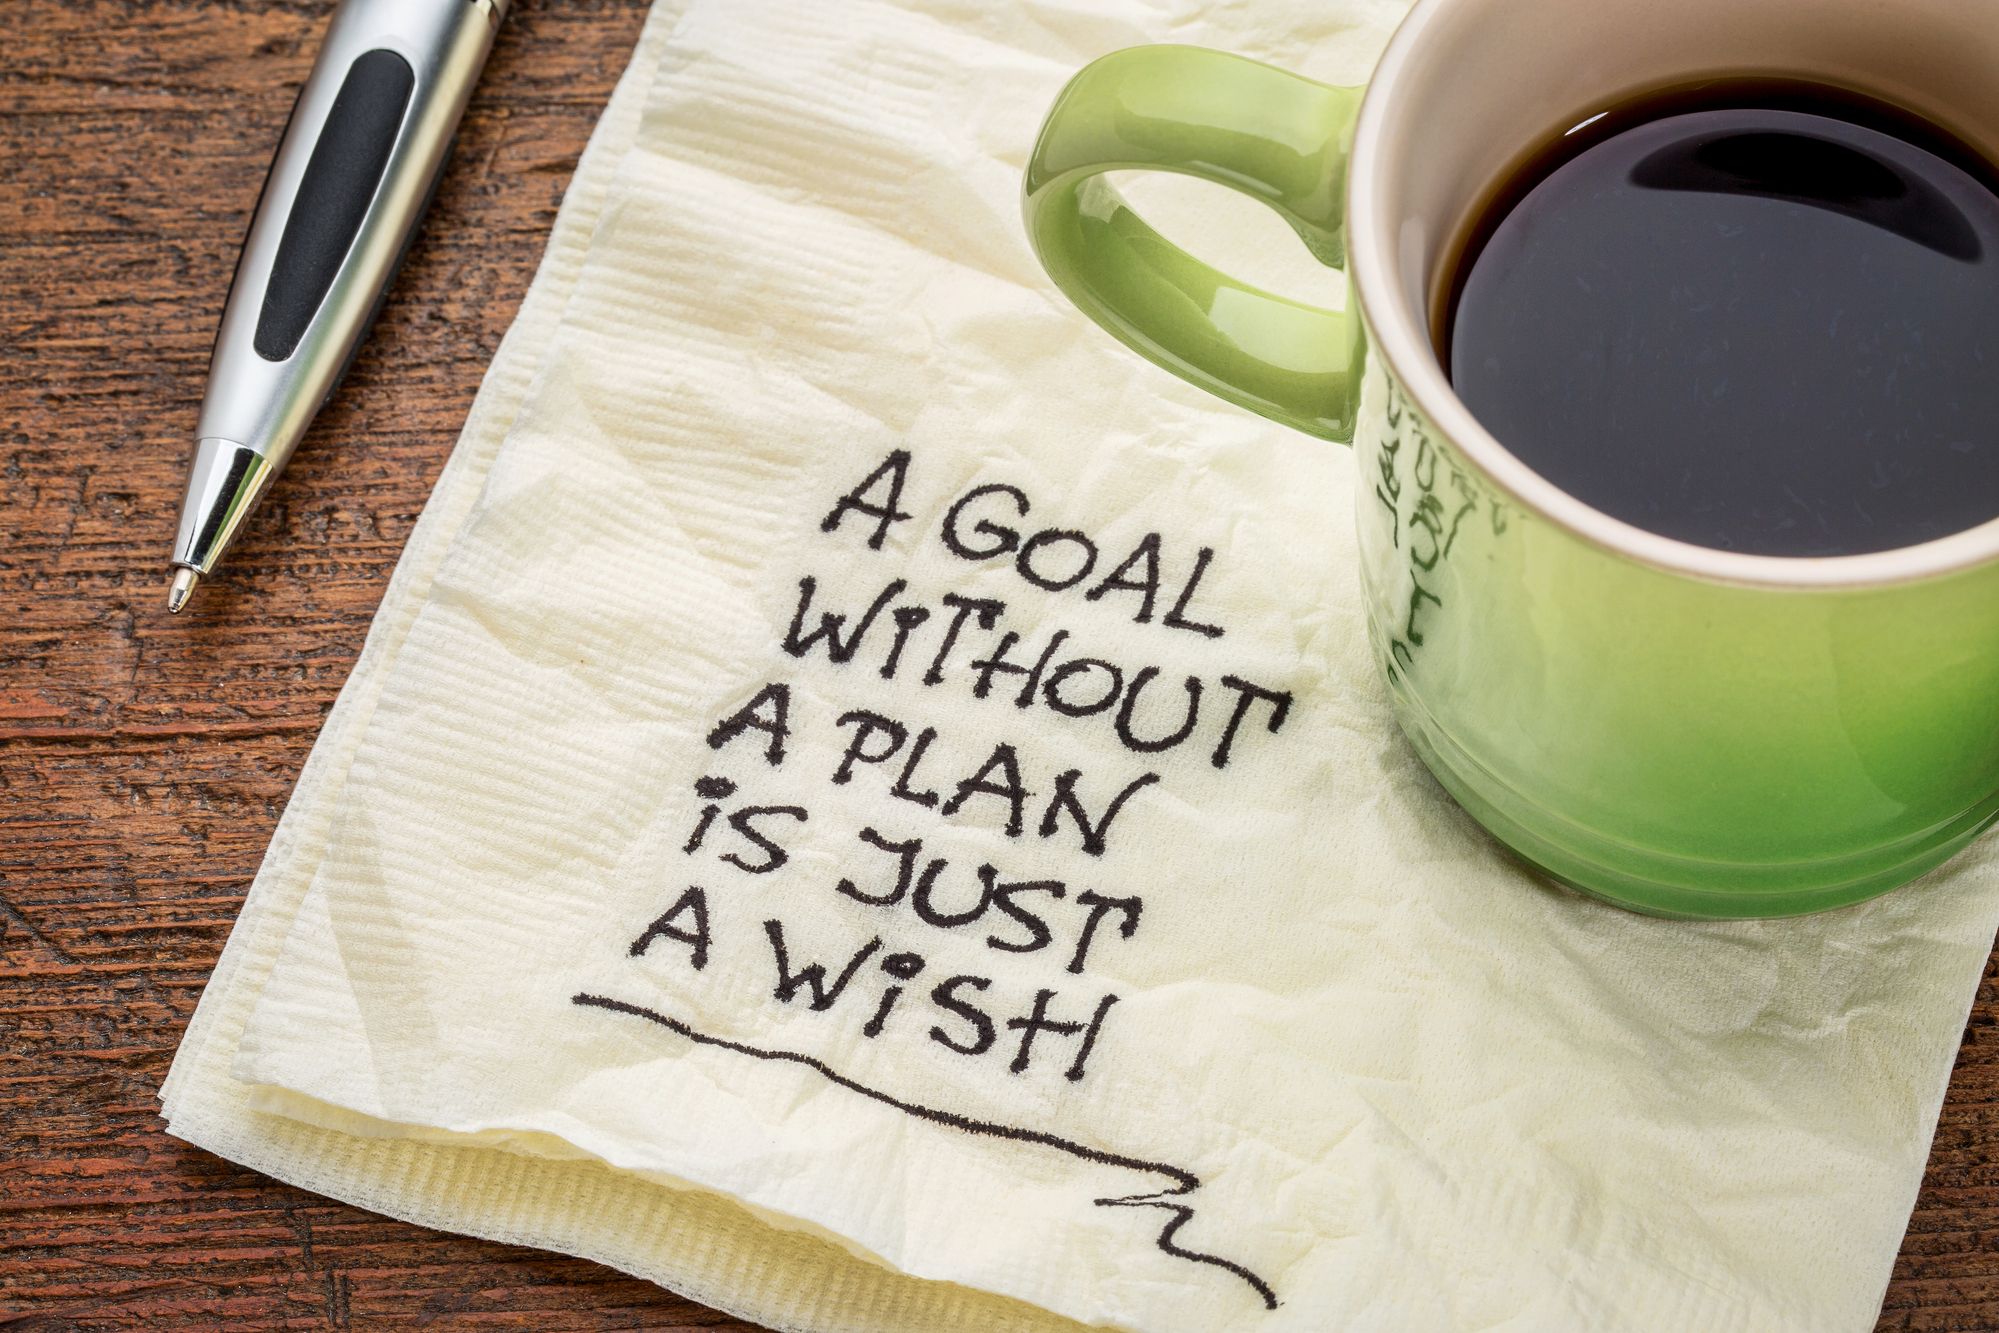 Un objectif sans plan est juste un souhait écrit sur une serviette